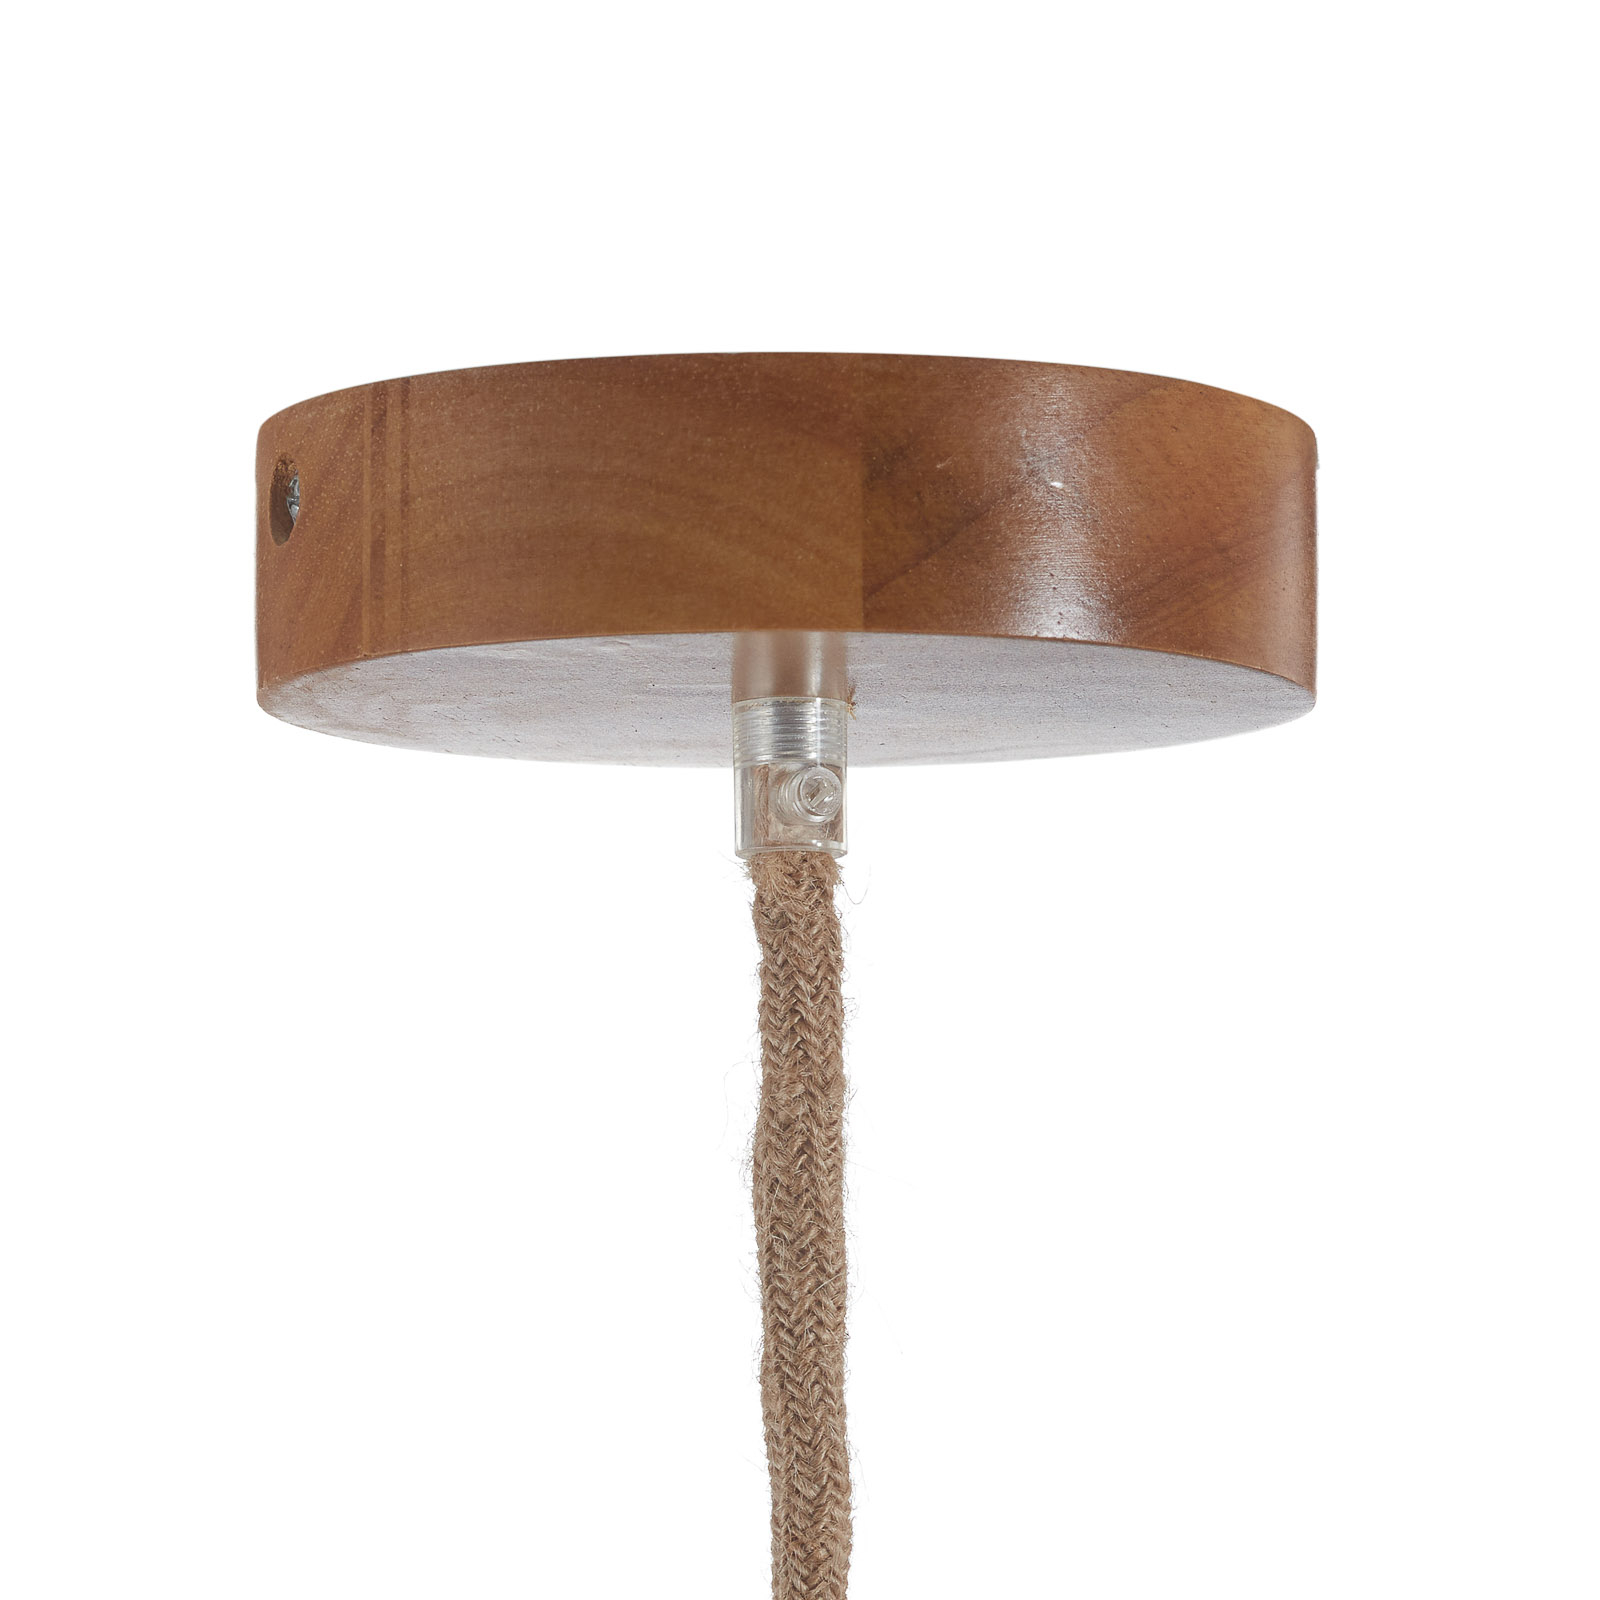 Lampa wisząca Bolita z drewna, Ø 42 cm